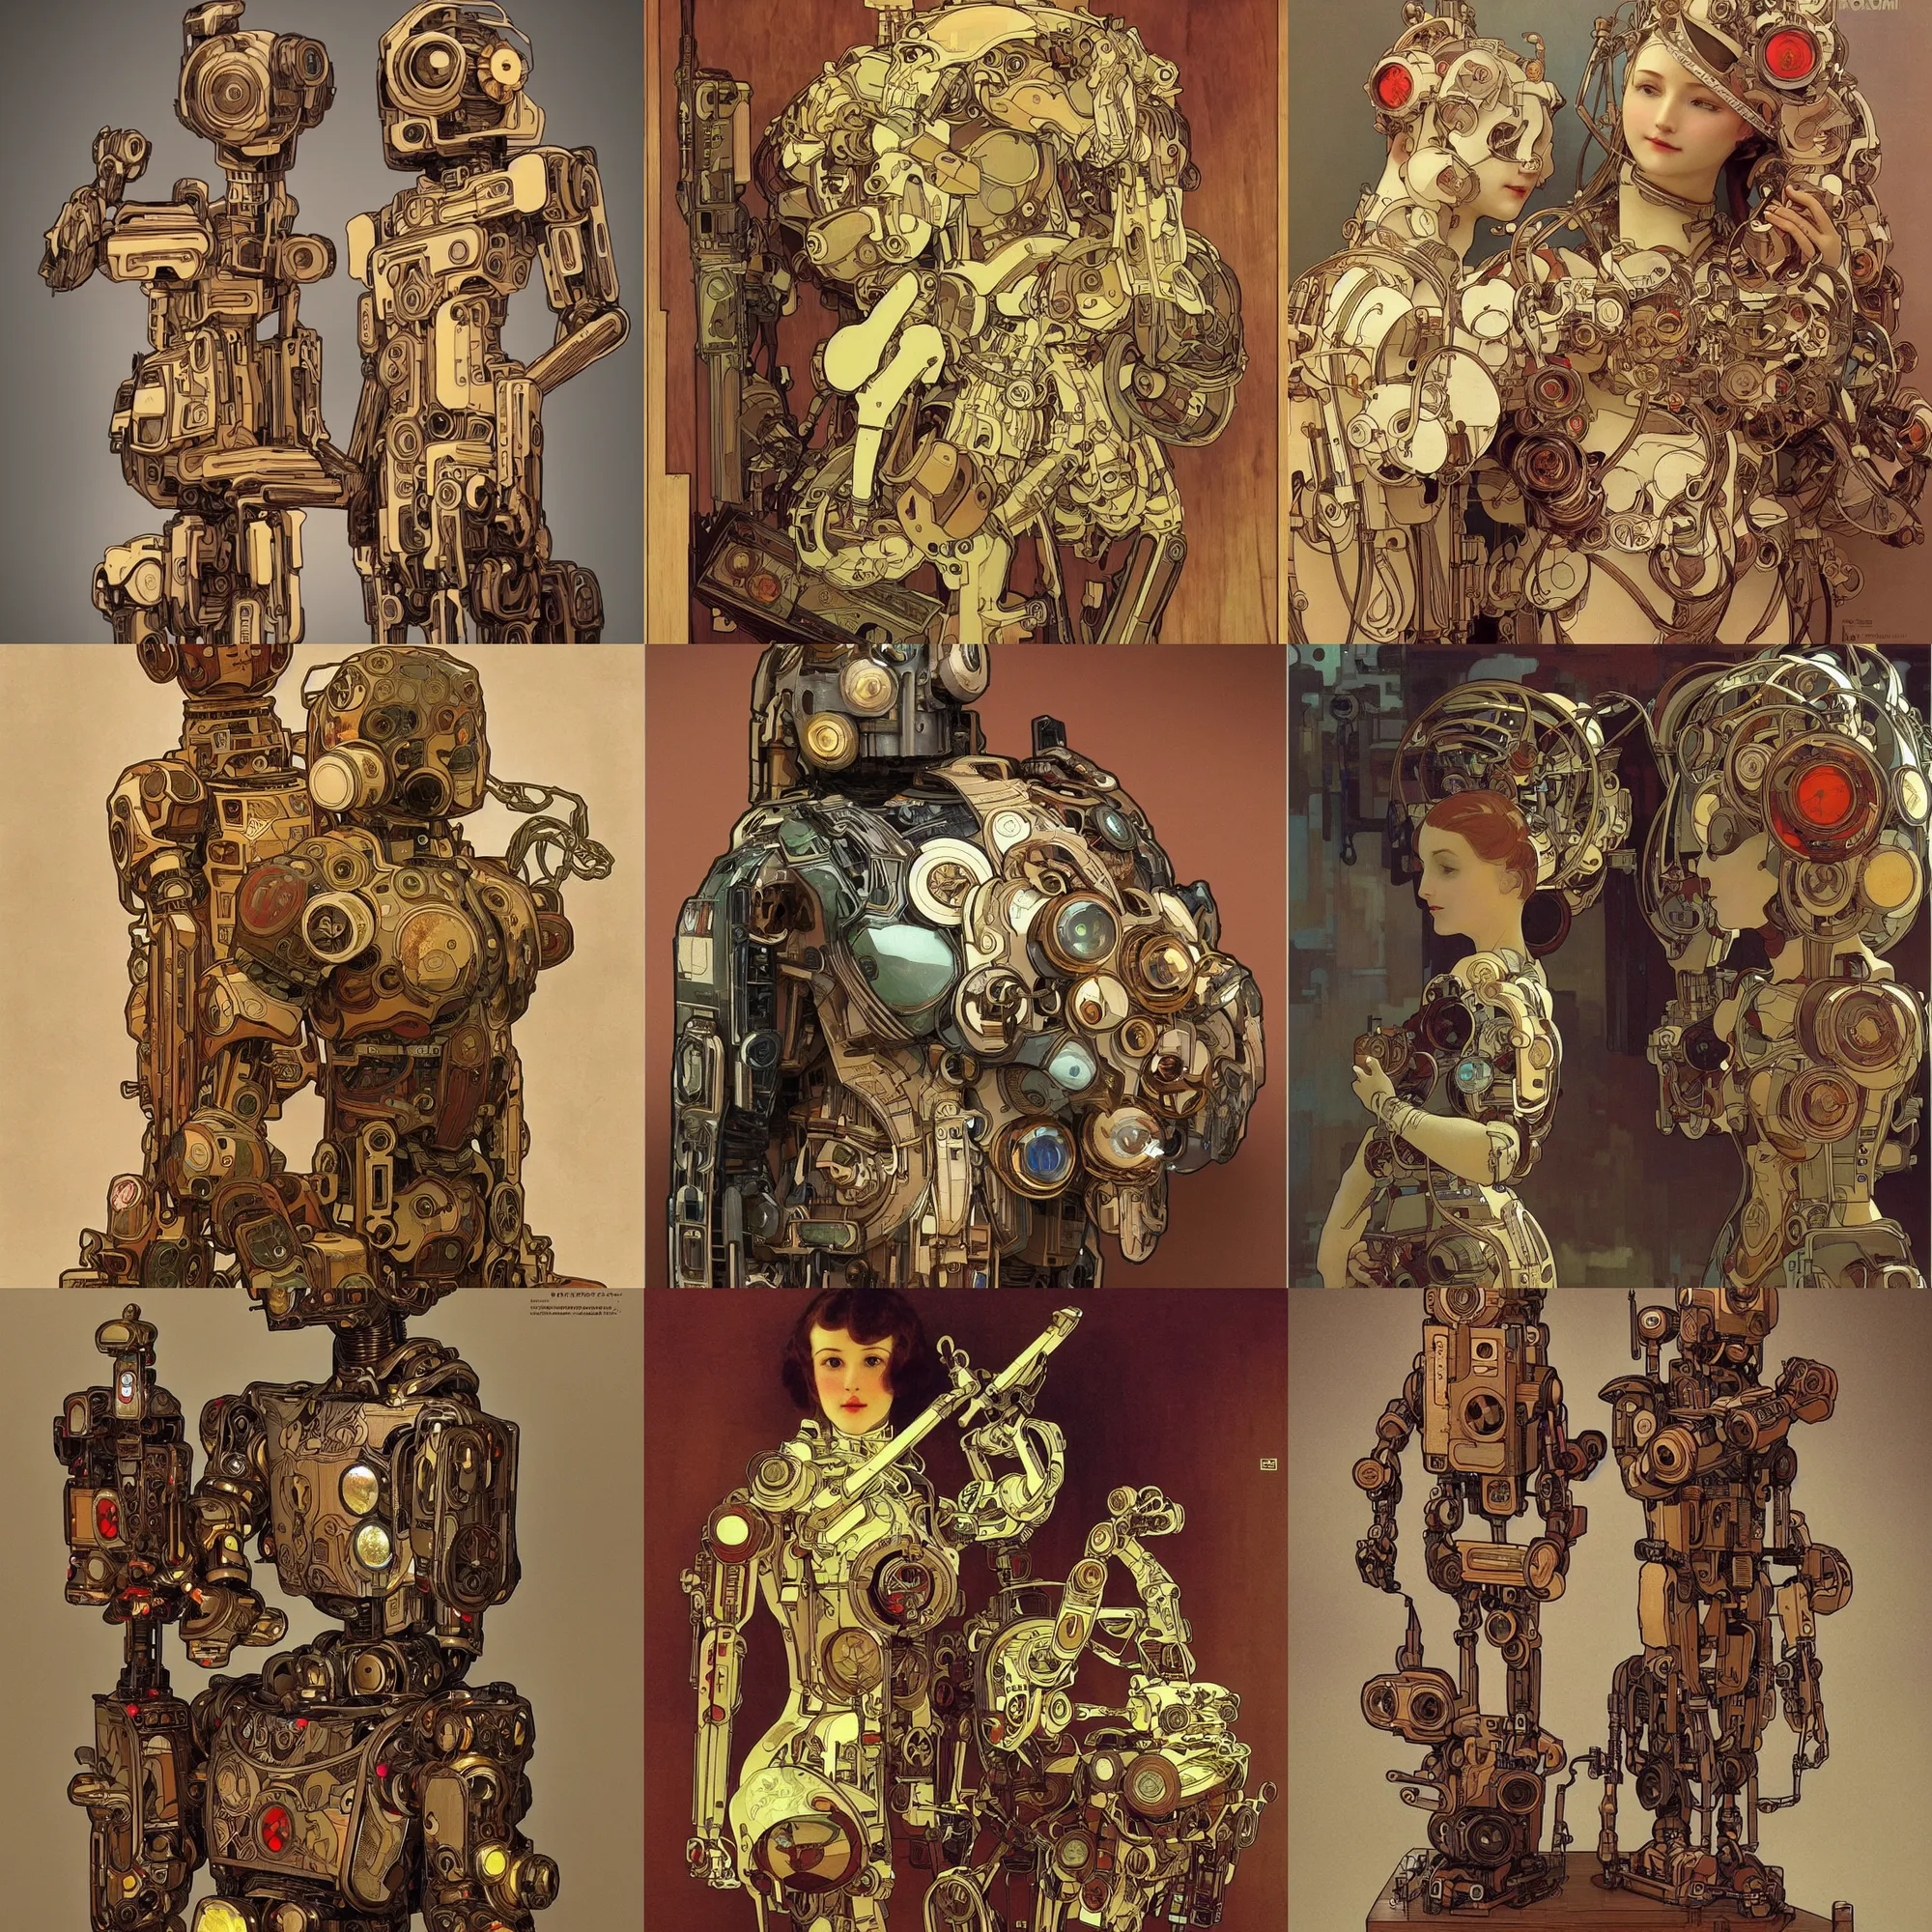 Prompt: 8 k photorealistic, a wooden art toys on a pedestal, cute robot wooden, cyberpunk, concept art, contemporary art gallery, art by alphonse mucha